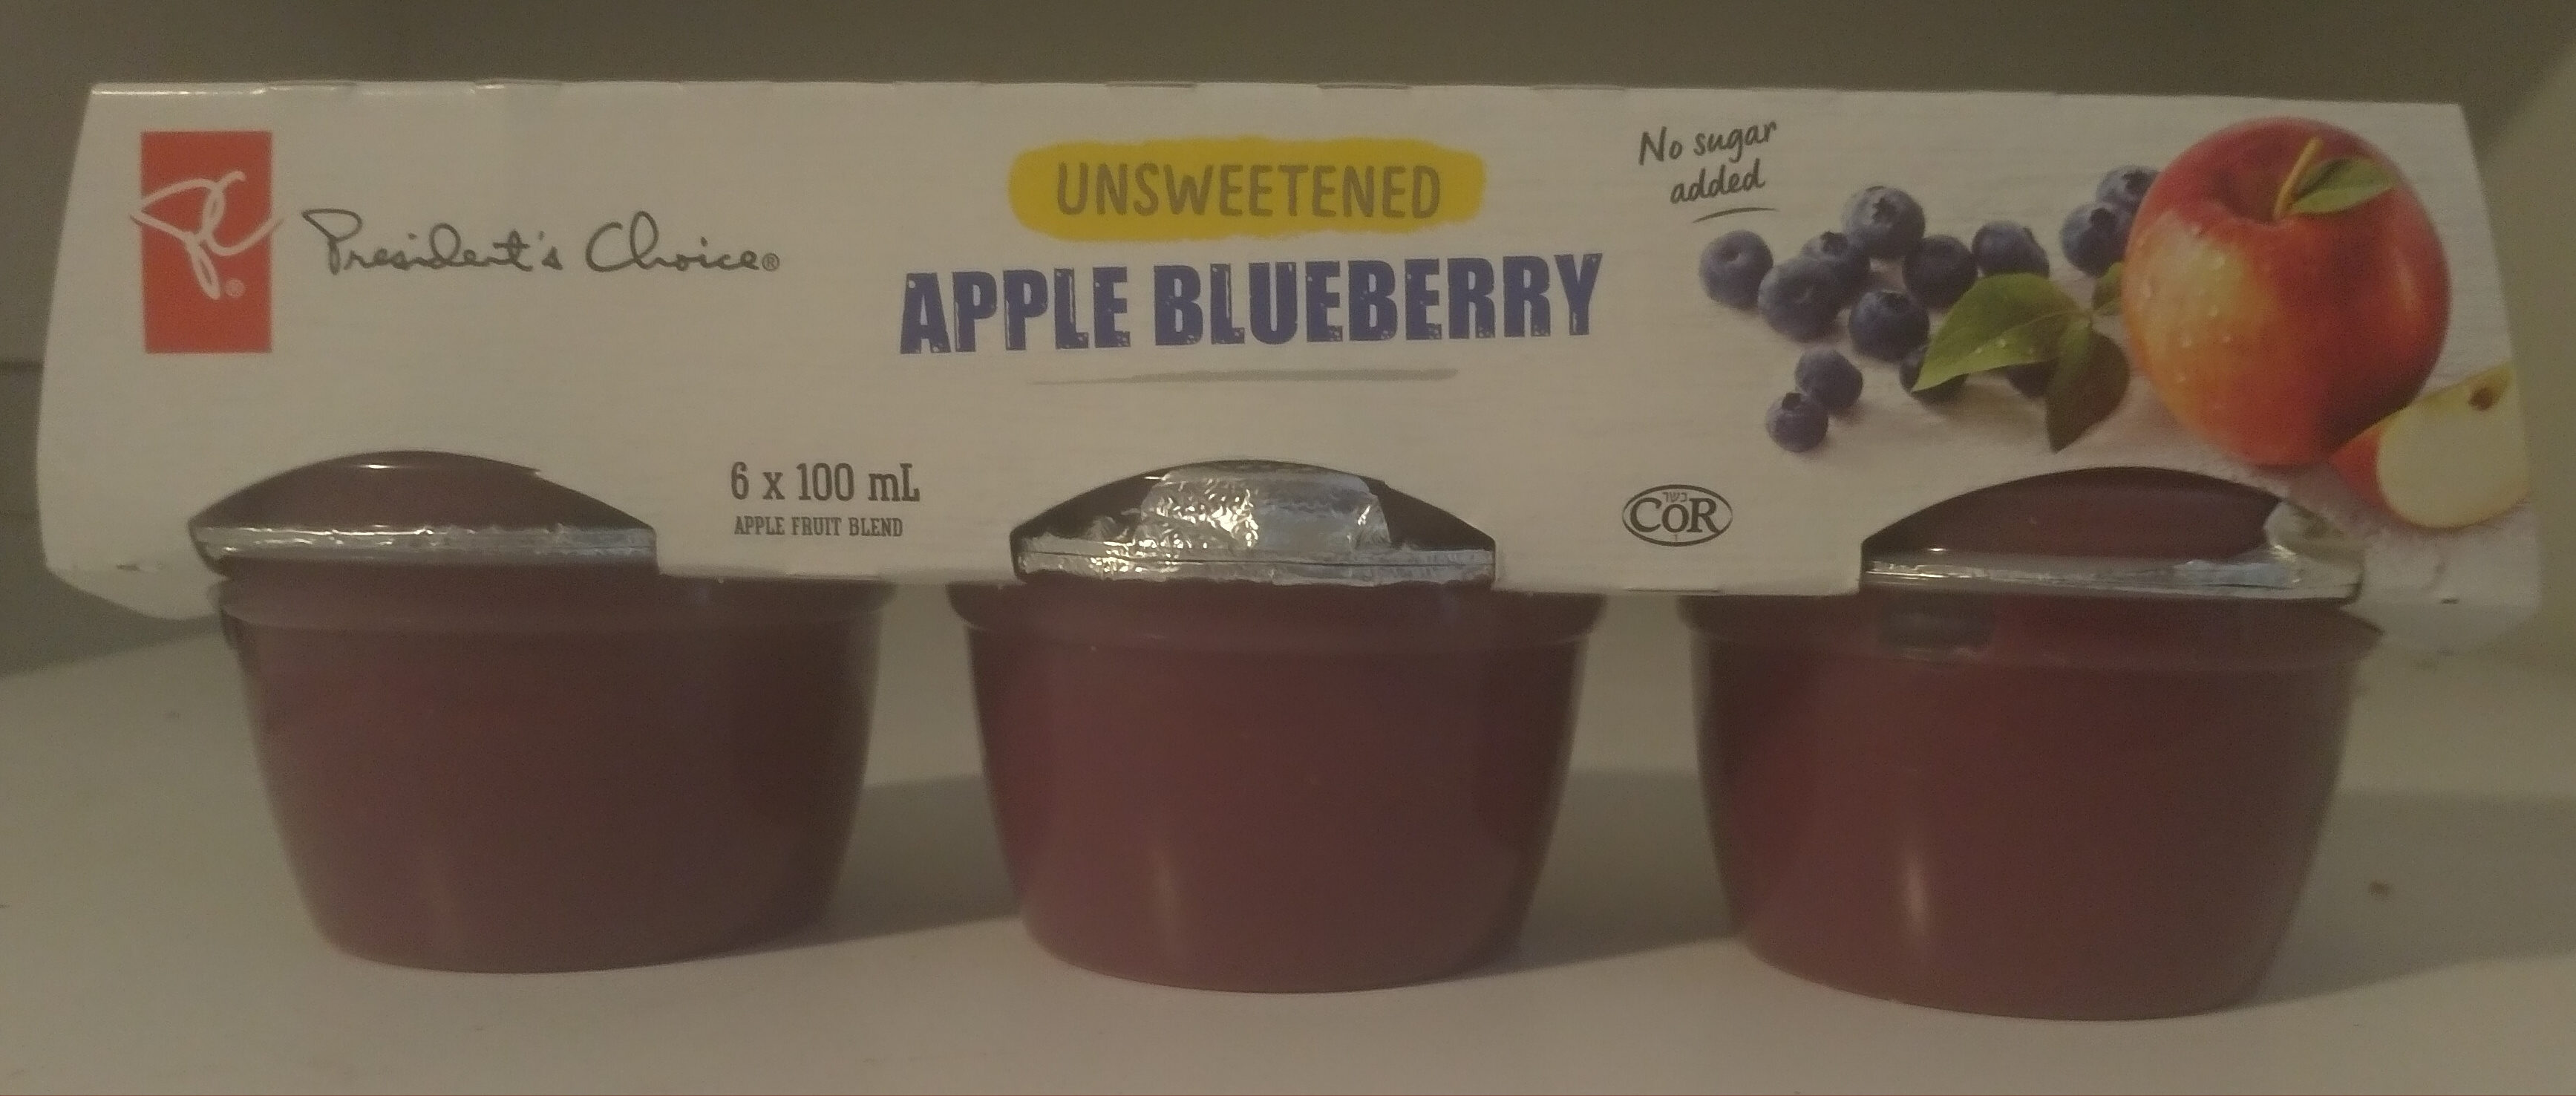 Unsweetened Apple Blueberry Apple Fruit Blend - Product - en